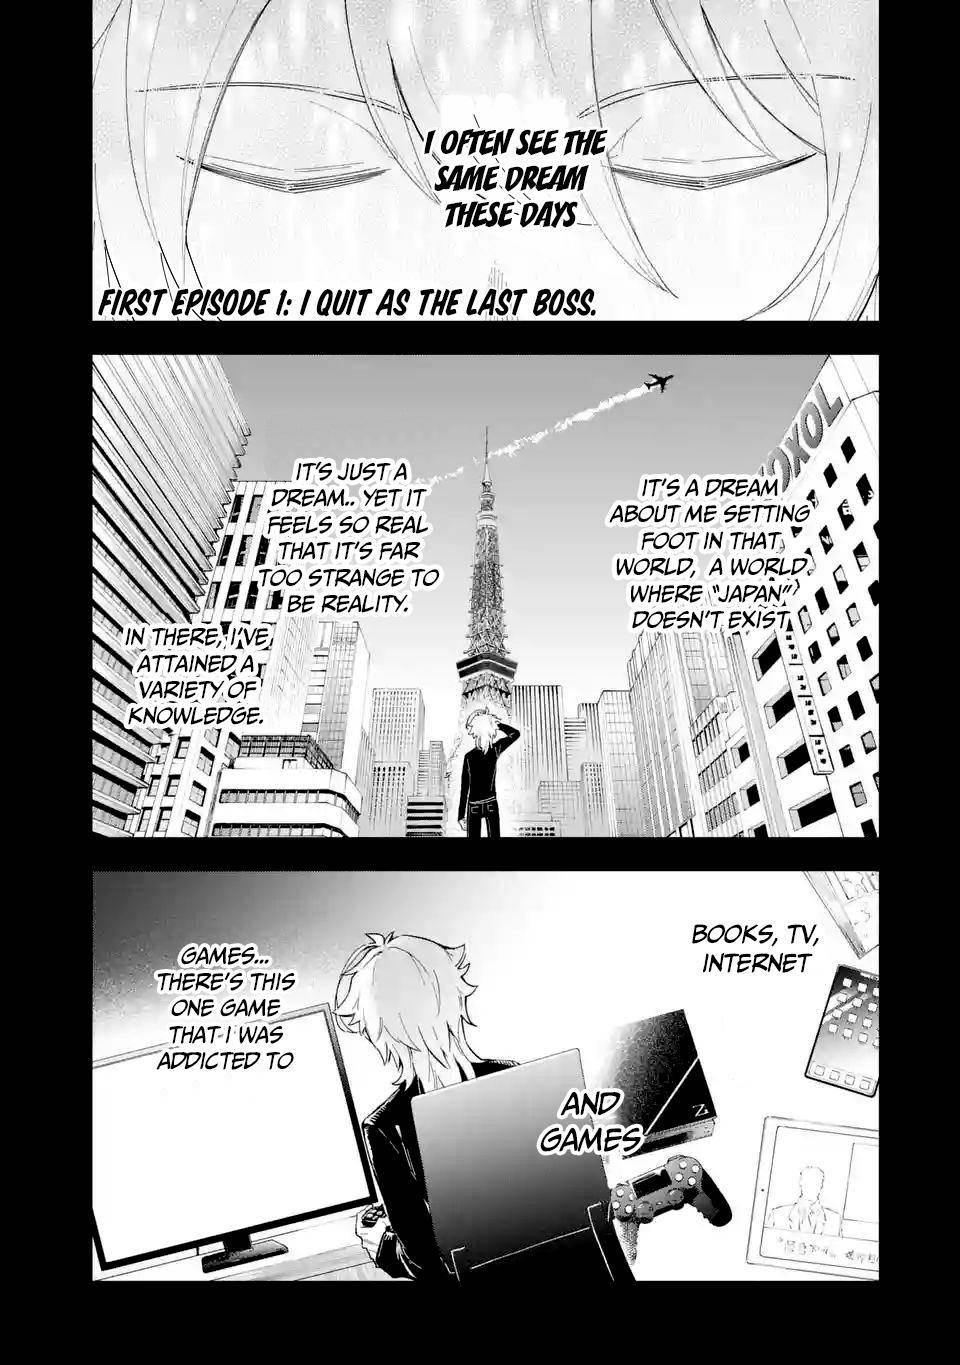 Last Boss, Yamete Mita - chapter 1.1 - #2